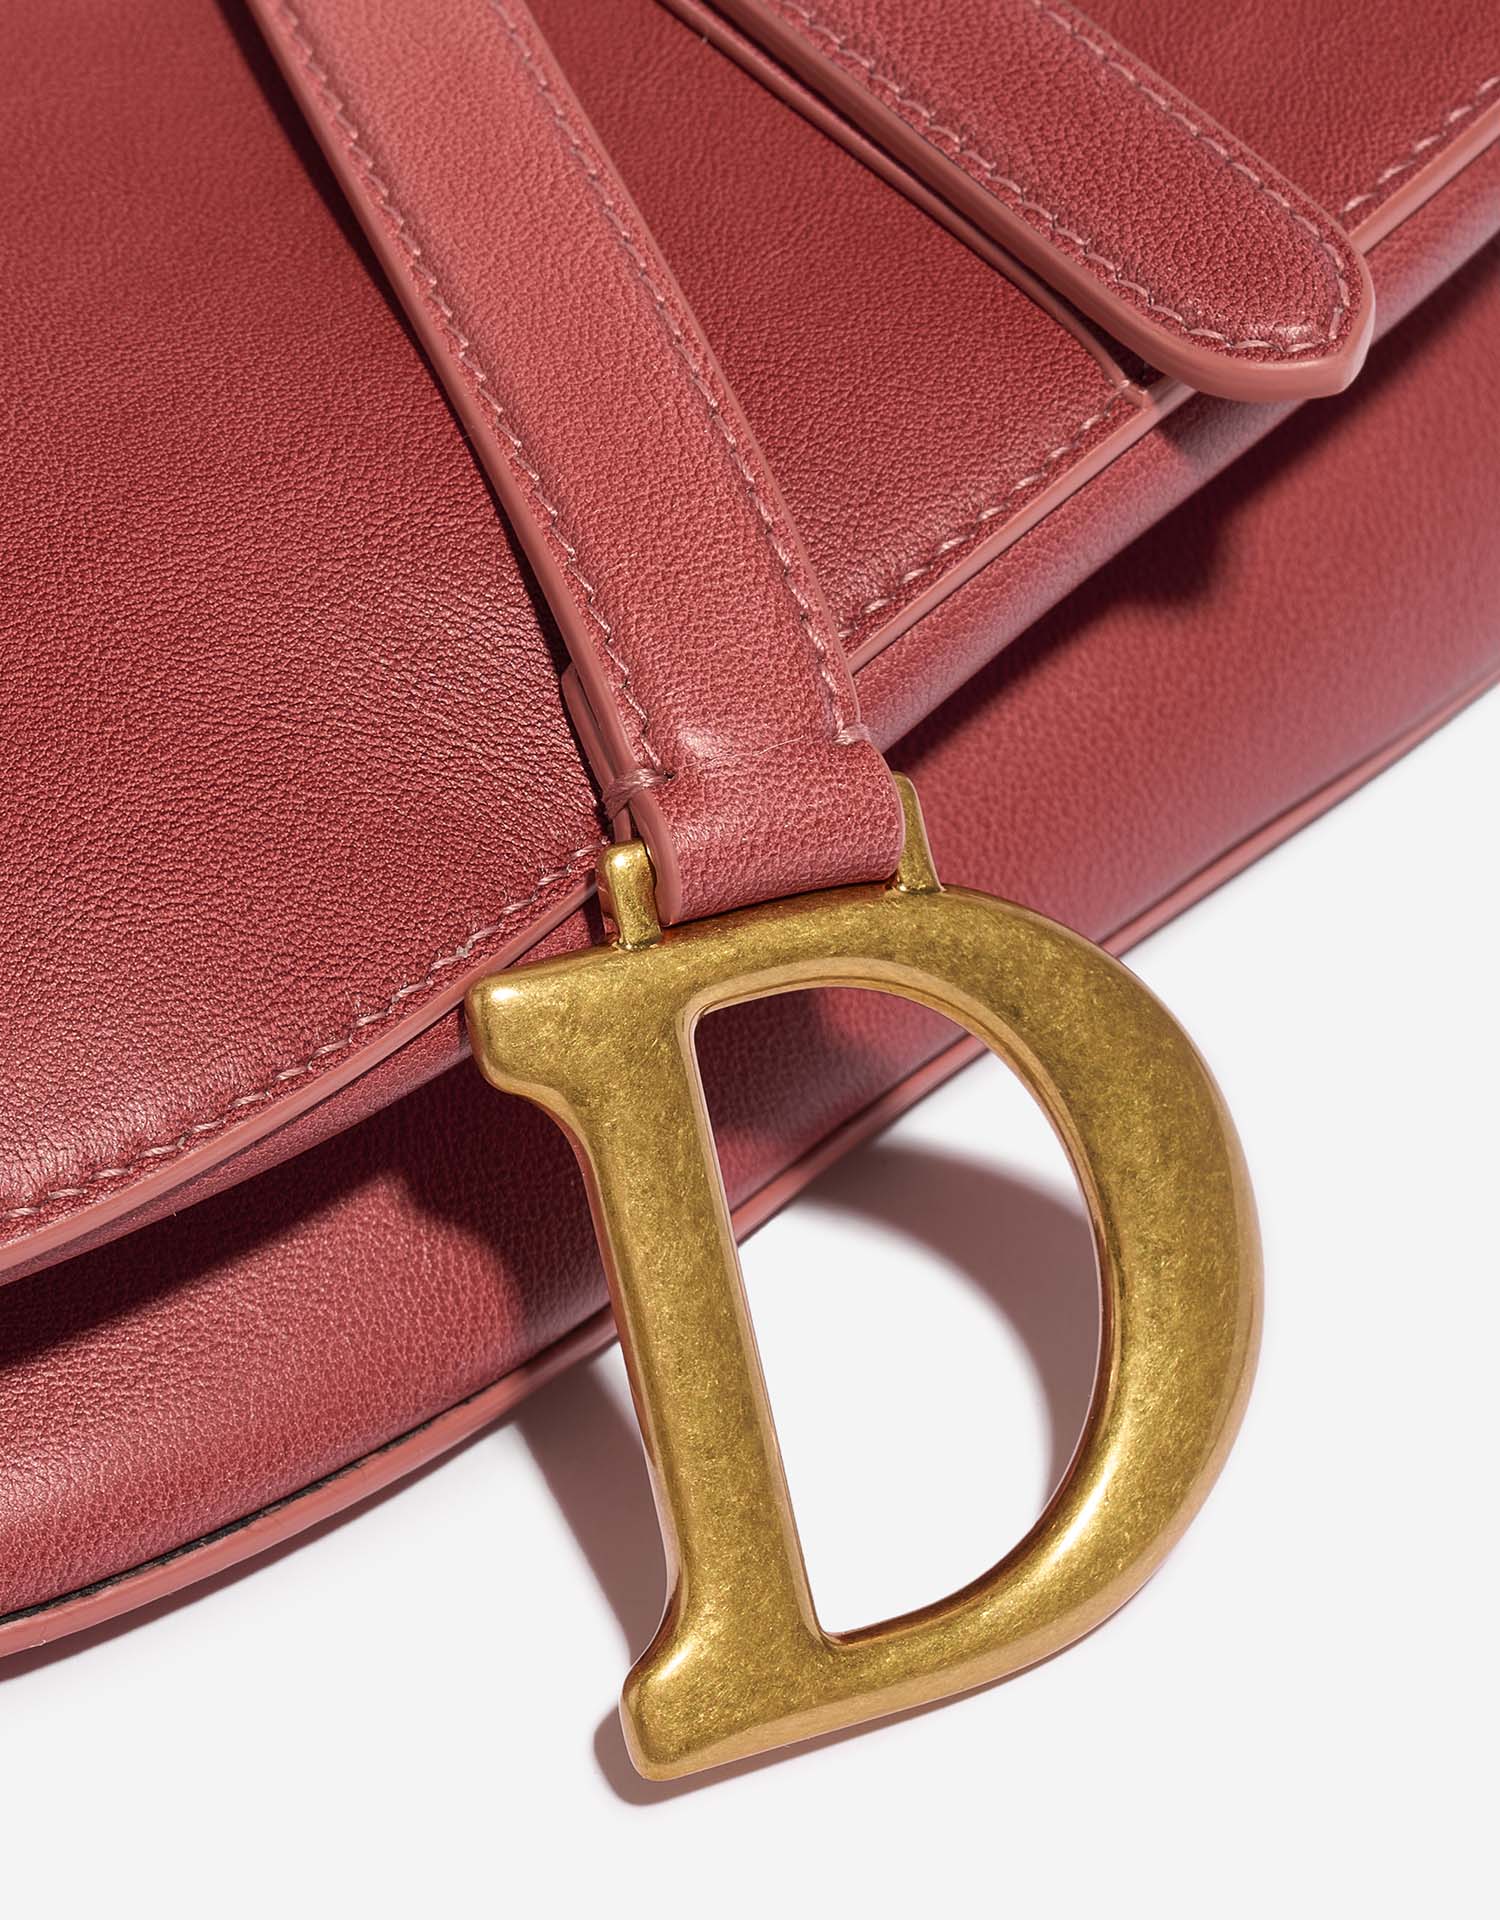 Dior Saddle Medium Pink Verschluss-System | Verkaufen Sie Ihre Designer-Tasche auf Saclab.com